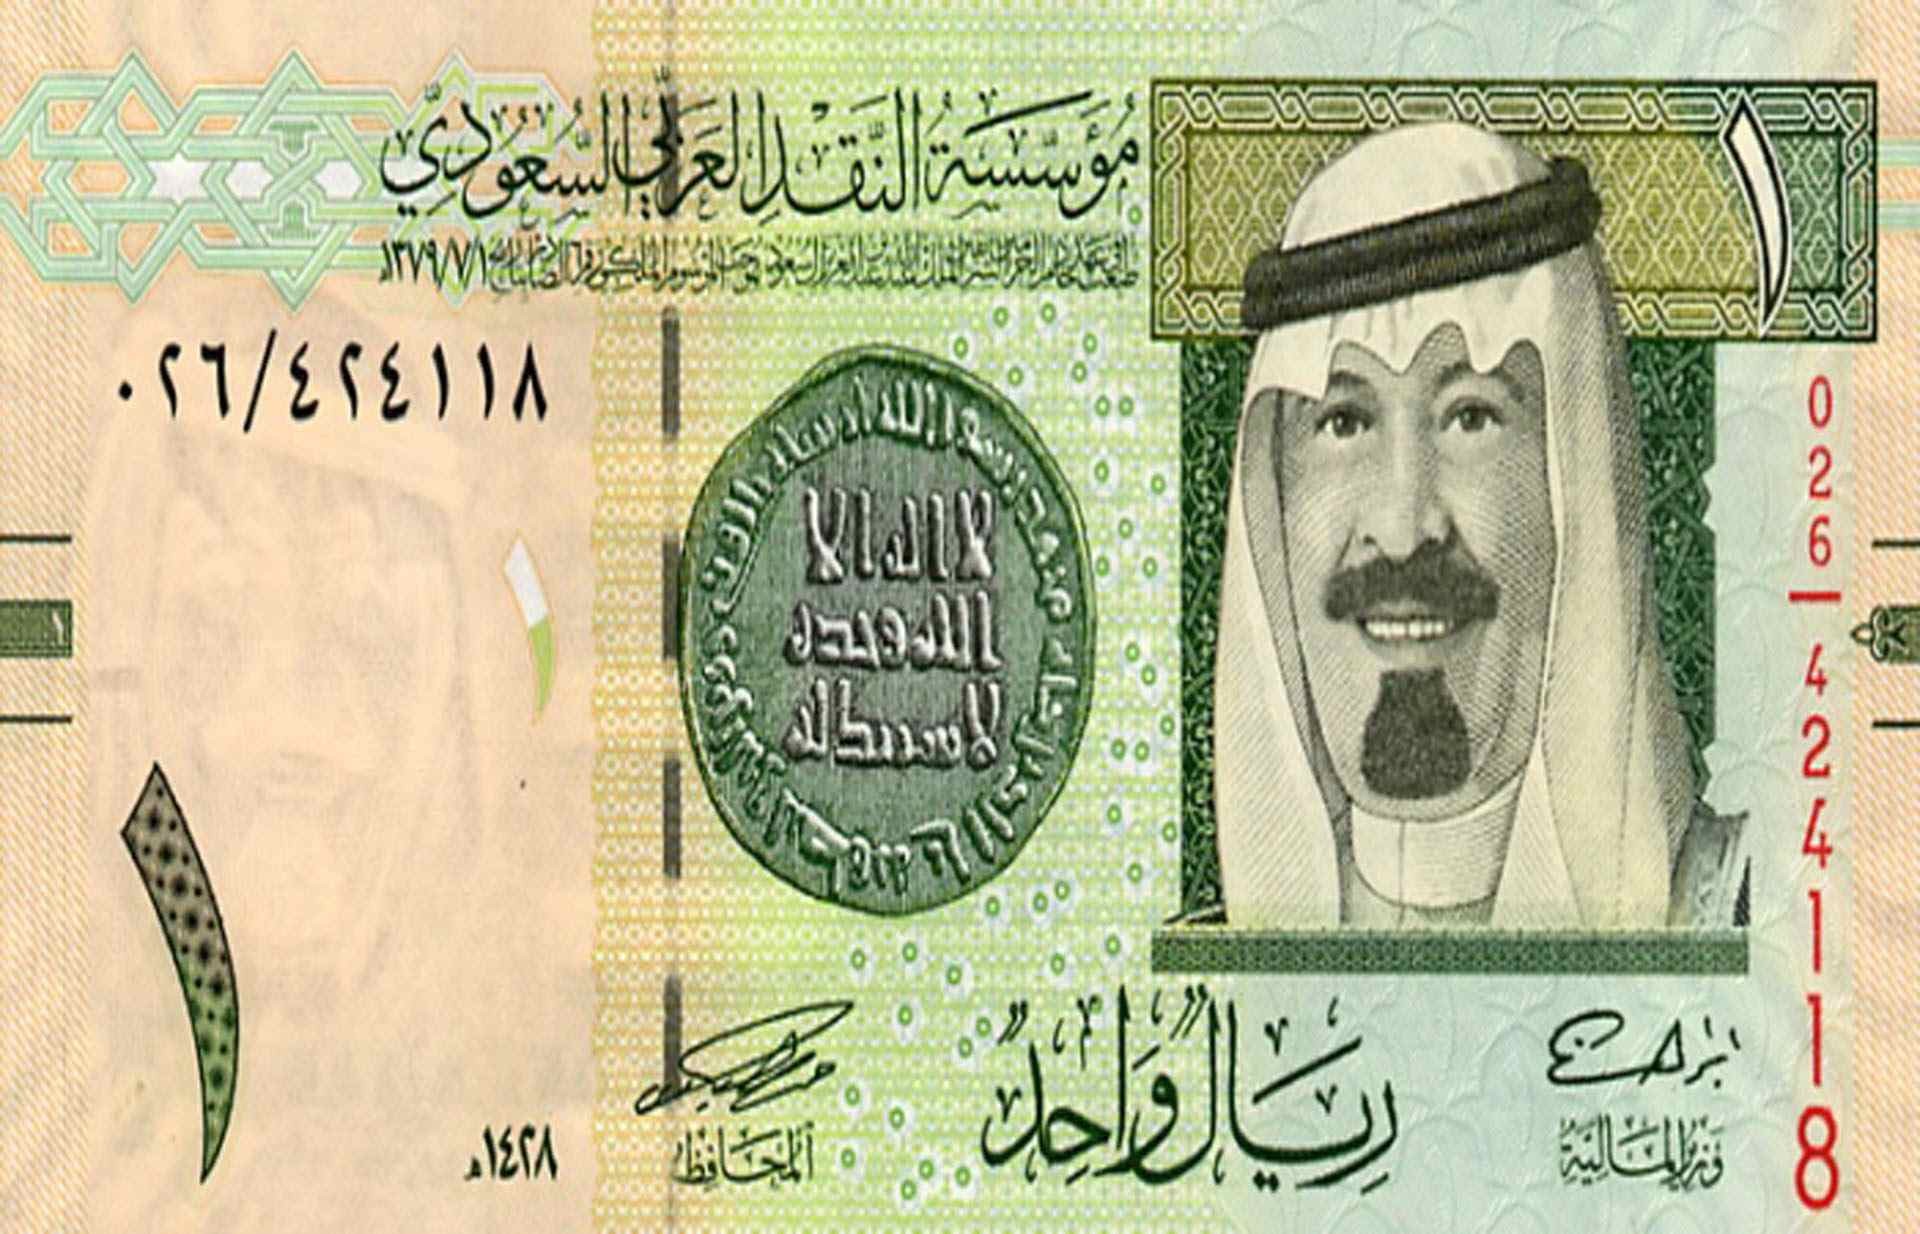 سعر الريال السعودي مقابل الجنيه المصري اليوم في البنك الأهلي المصري والراجحي